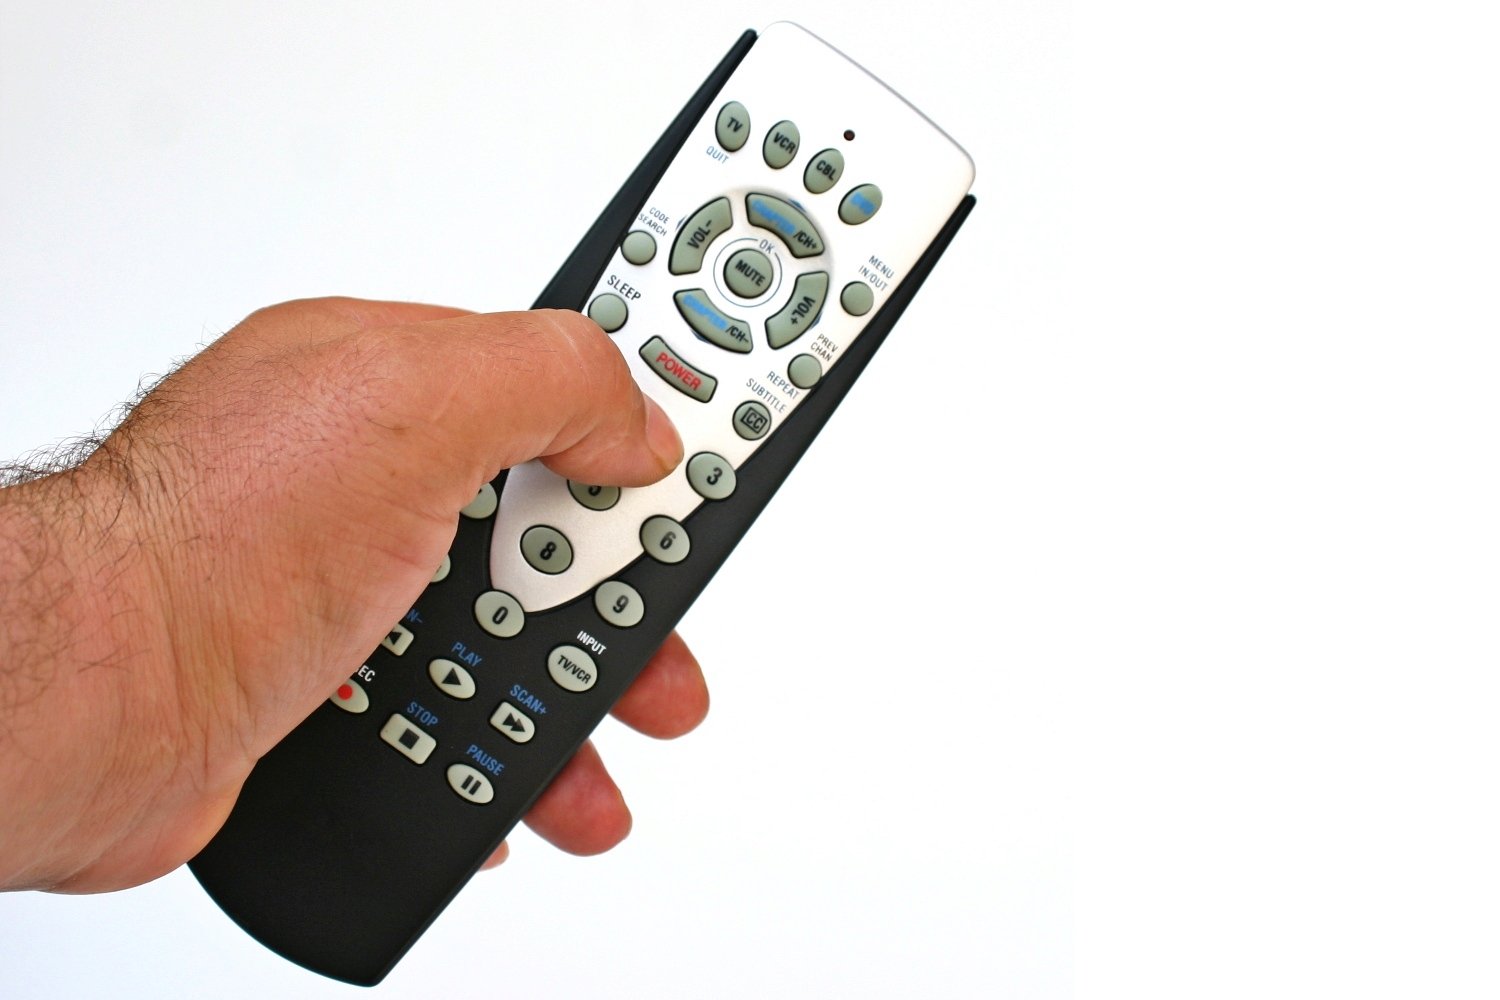 Tv remote apk. Remote Control. TV Hisense 75 Remote Control. Hands on Remote Control. Remout Control Coati in127090.